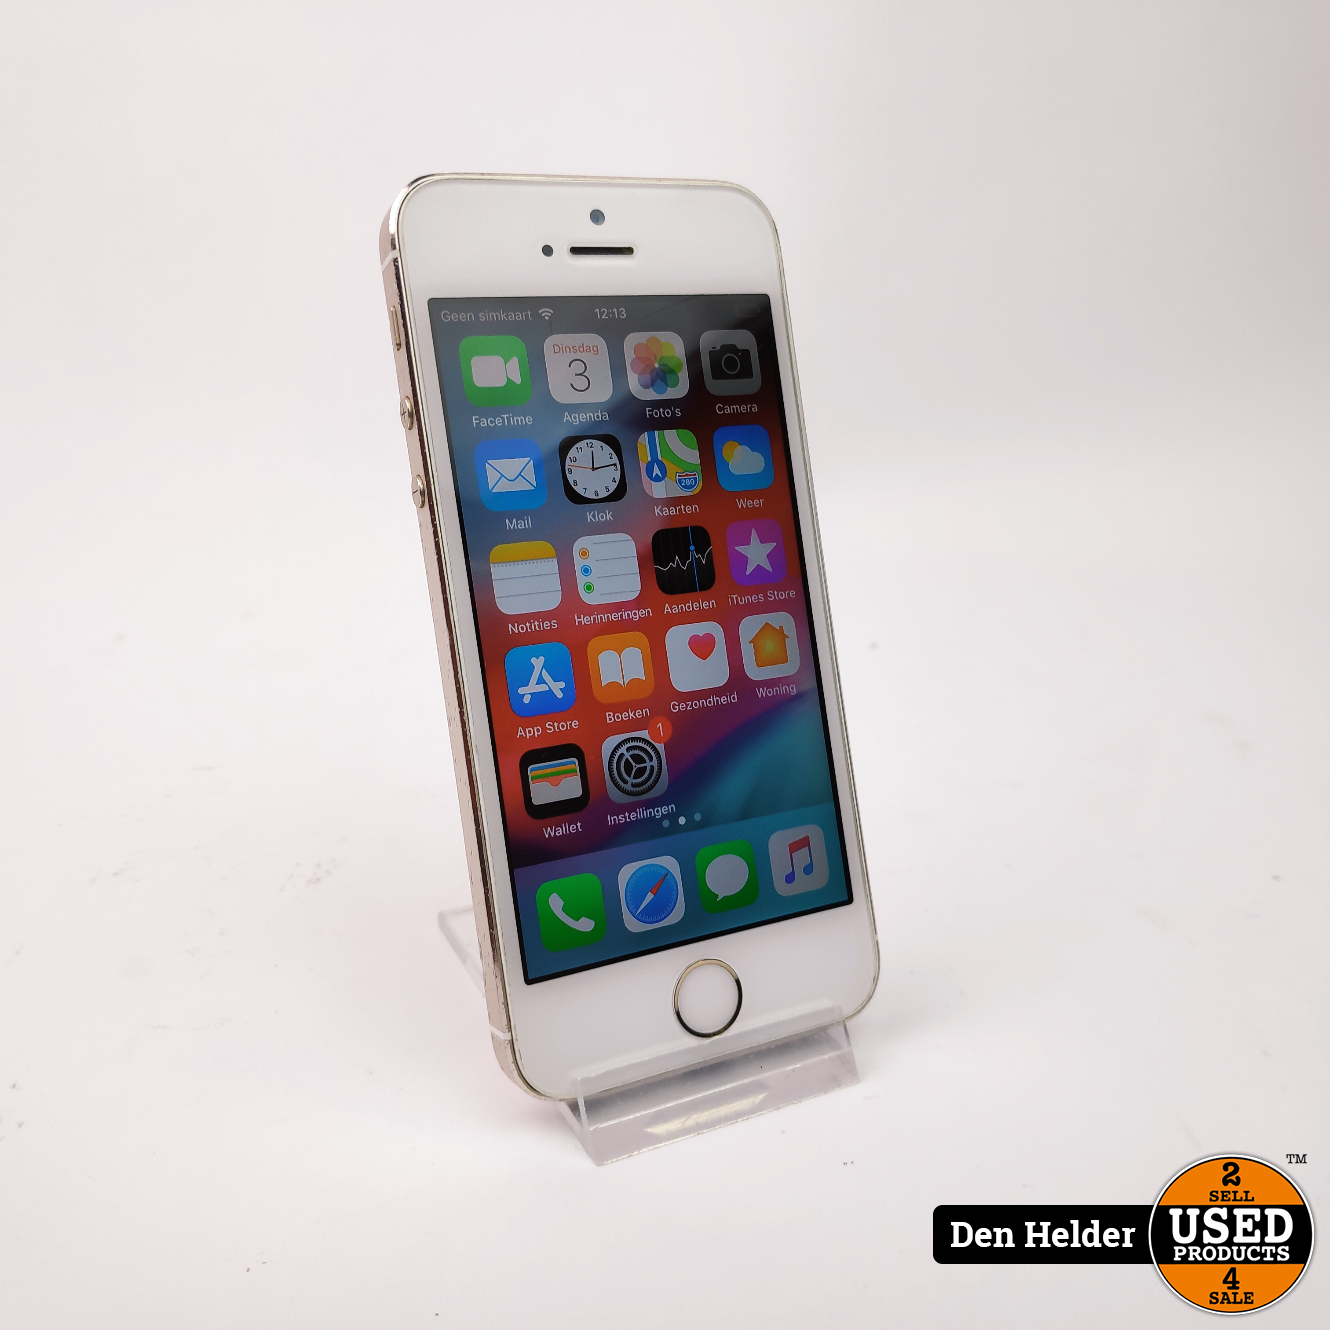 Menda City Gymnastiek Kan weerstaan Apple iPhone 5S 16GB Zilver - In Prima Staat - Used Products Den Helder